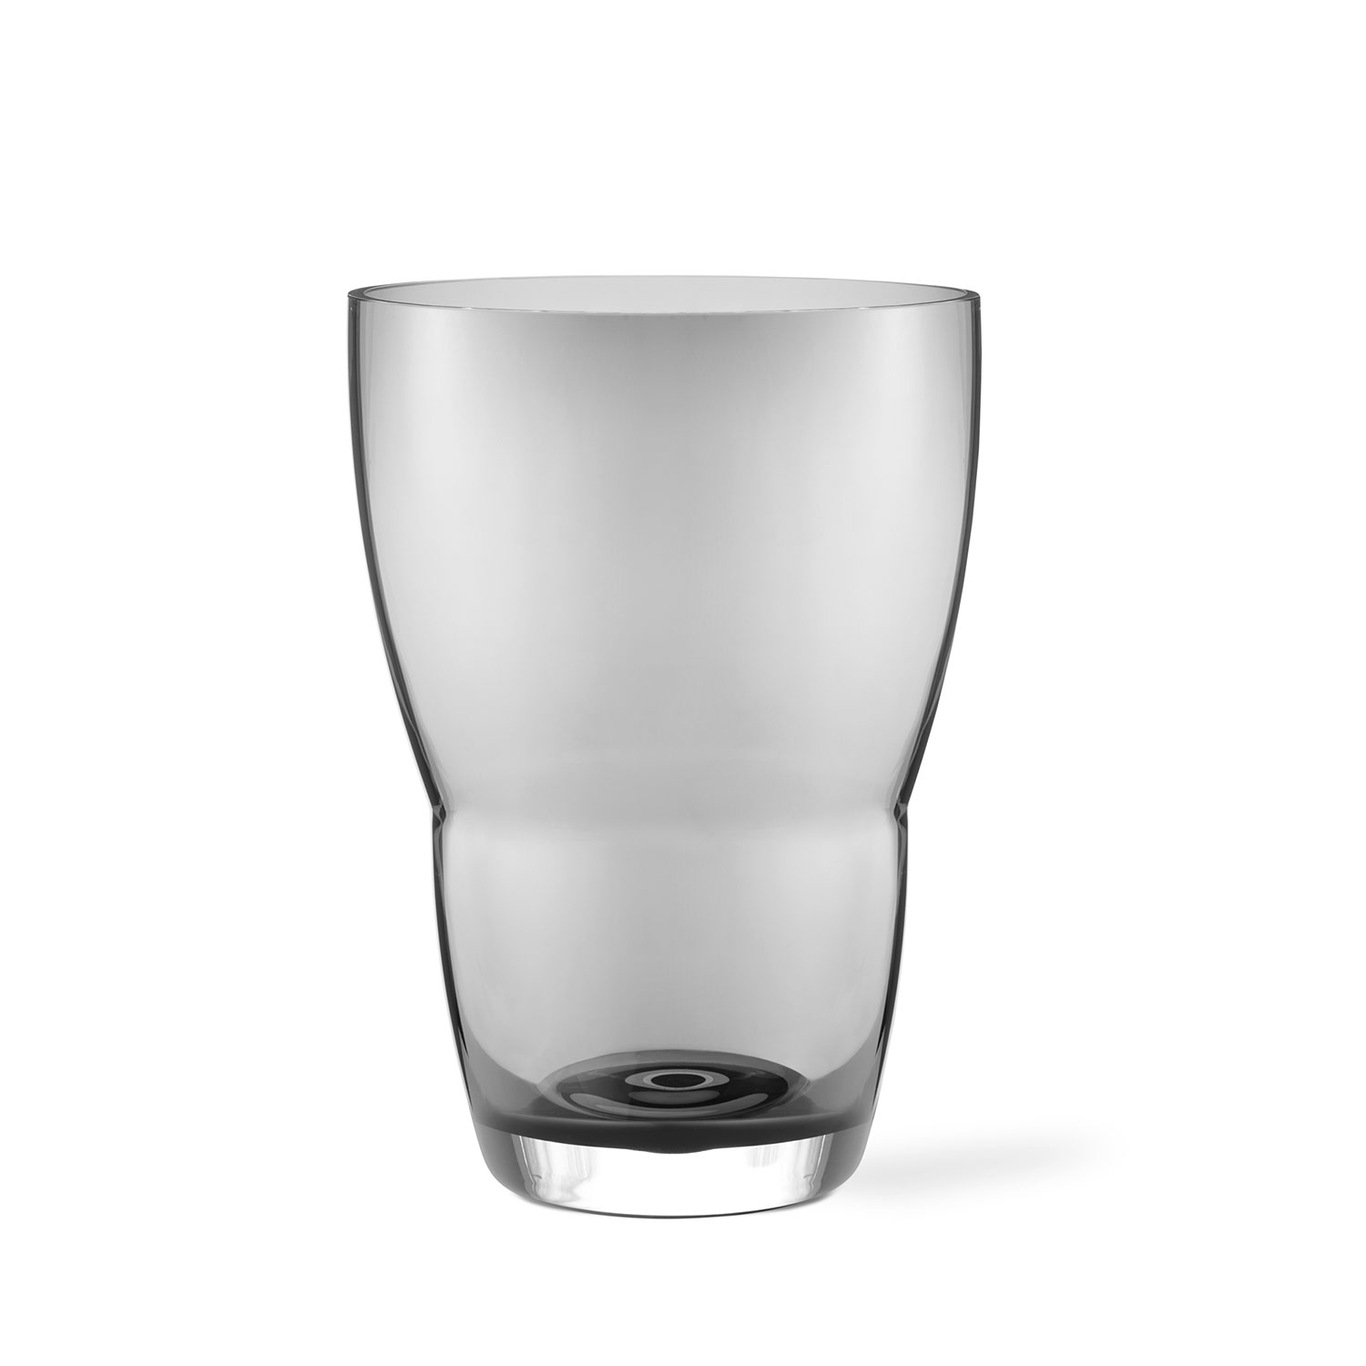 248 Vas Munblåst Glas 21x29,8 cm, Rökgrå